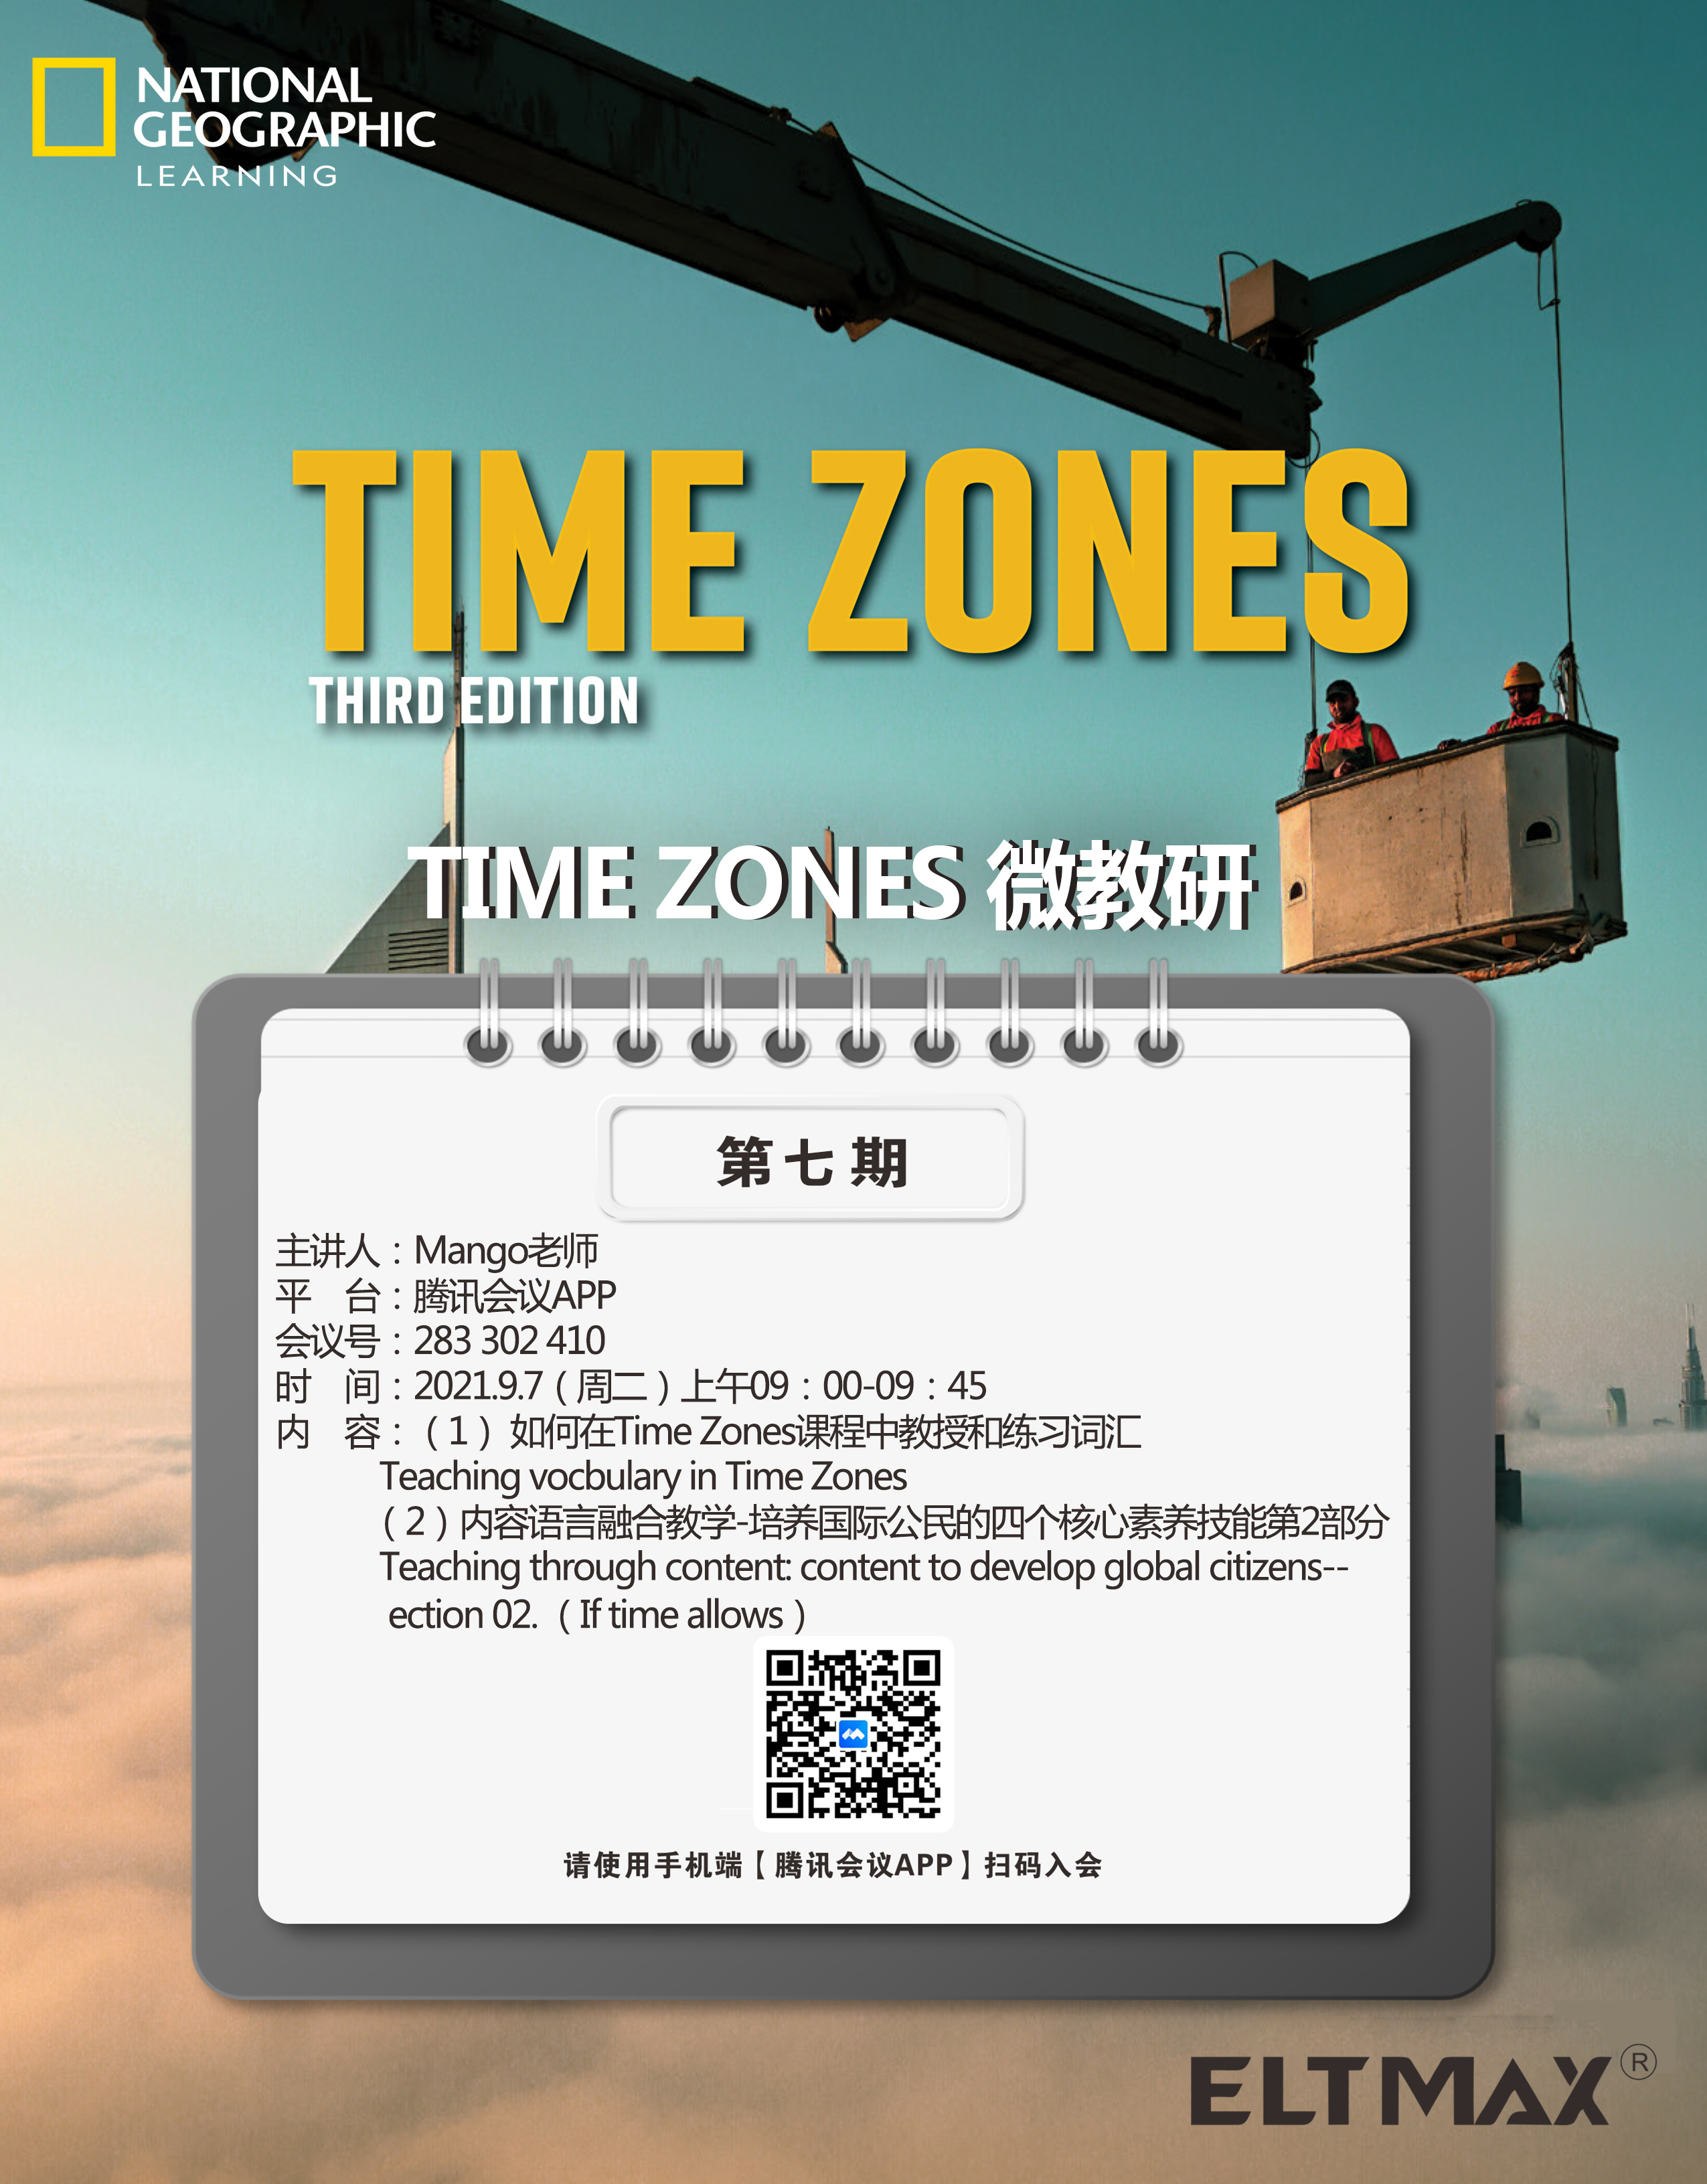 2021.9.7日第七次Time zones 微教研